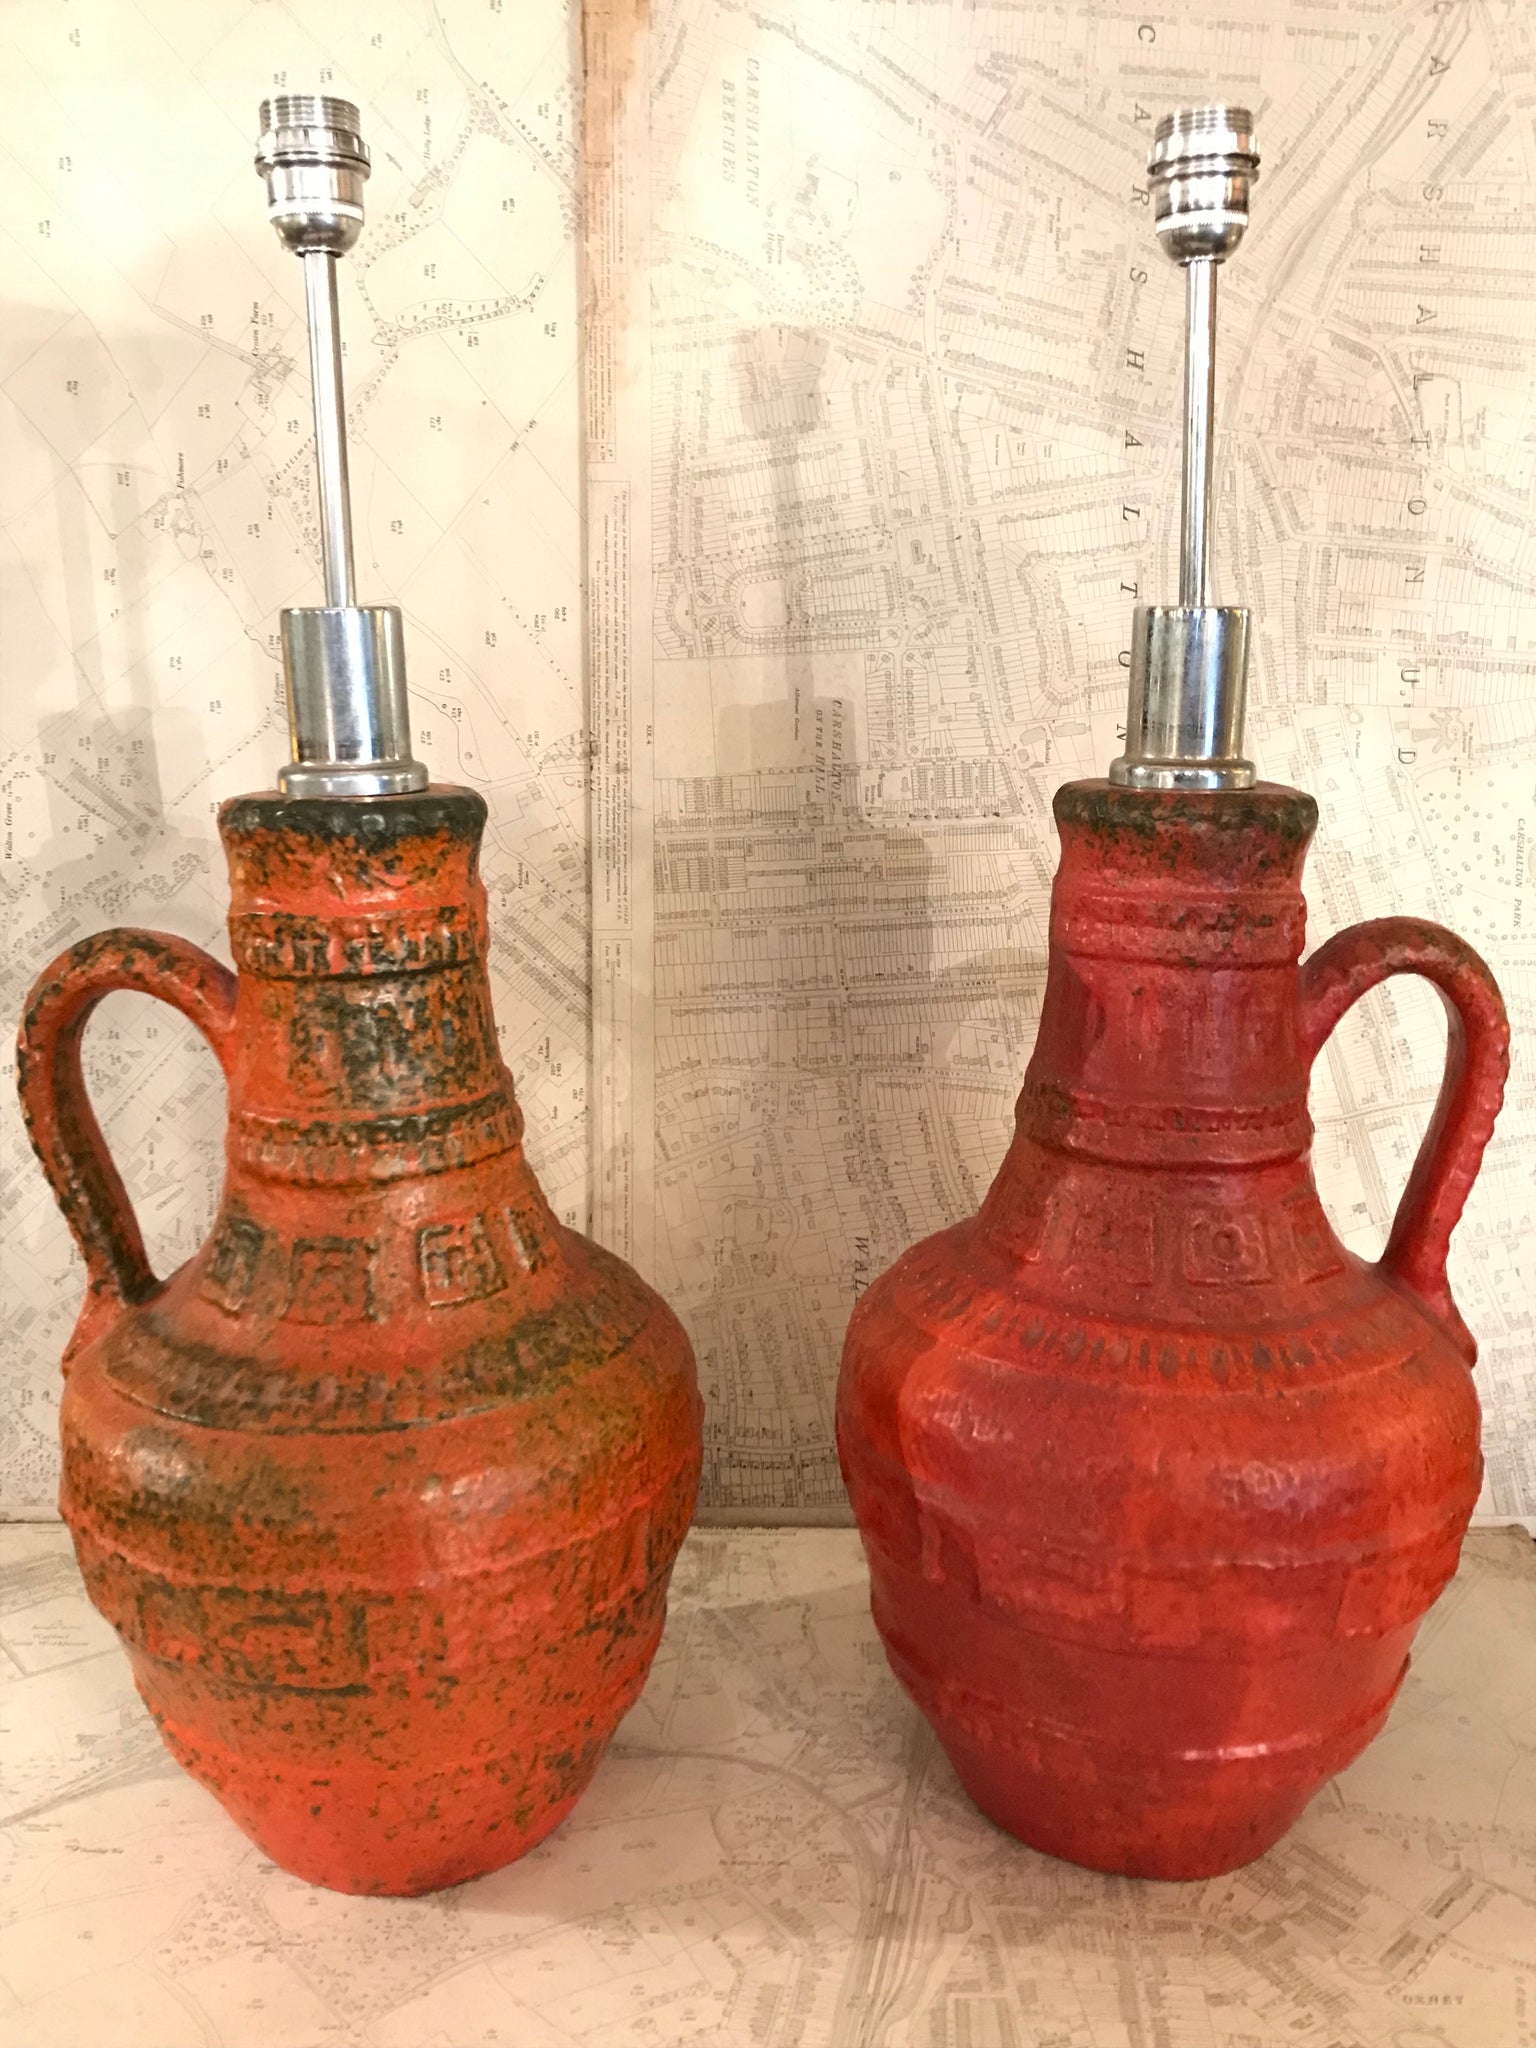 Impressive pair of German ceramic lamps circa 1960.